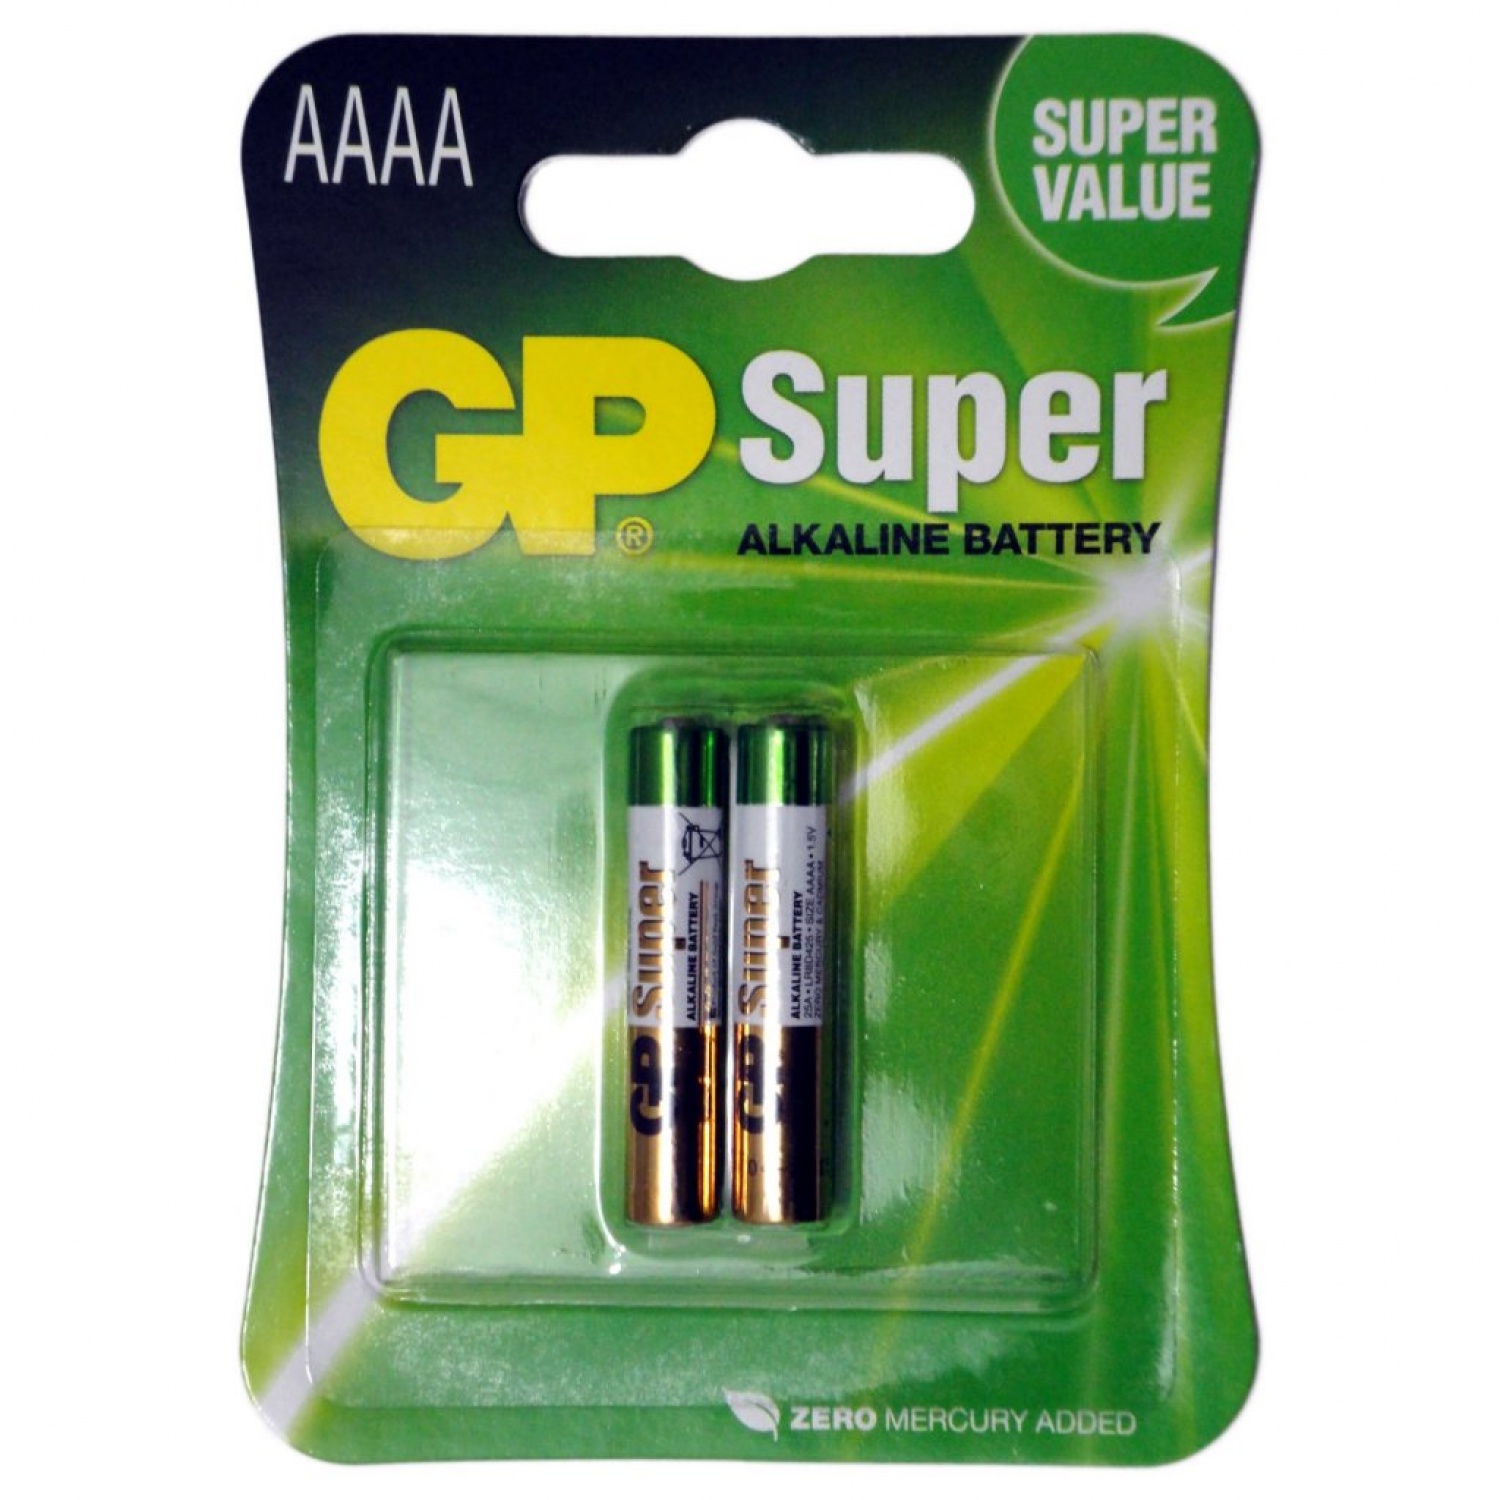 Pila AAAA Super Alkaline Battery - Paquete de dos (2) baterías